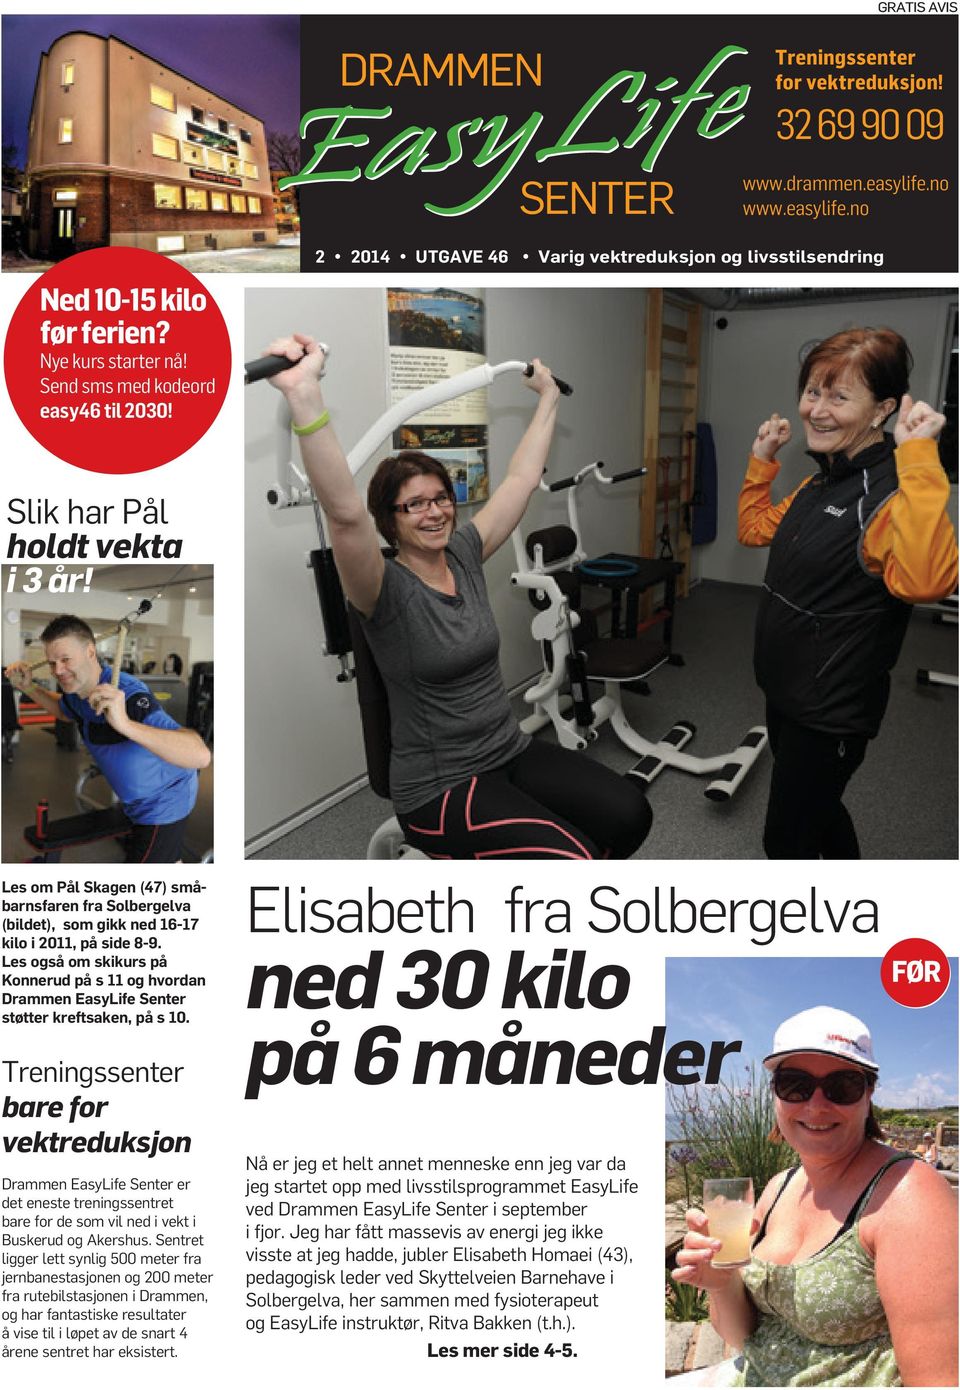 Les også om skikurs på Konnerud på s 11 og hvordan Drammen EasyLife Senter støtter kreftsaken, på s 10.